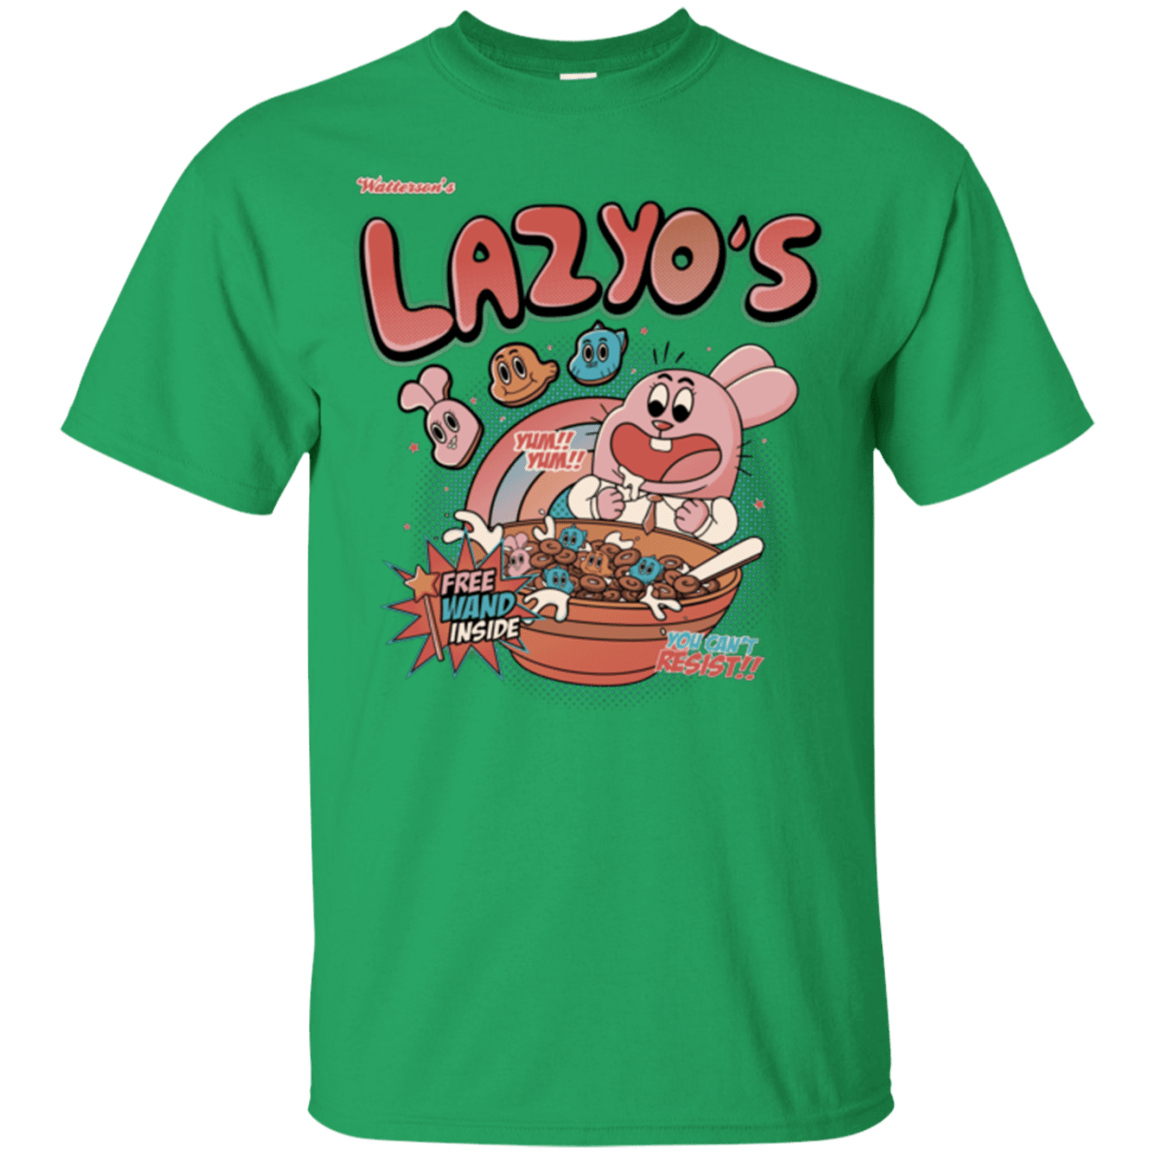 Lazyo's T-Shirt